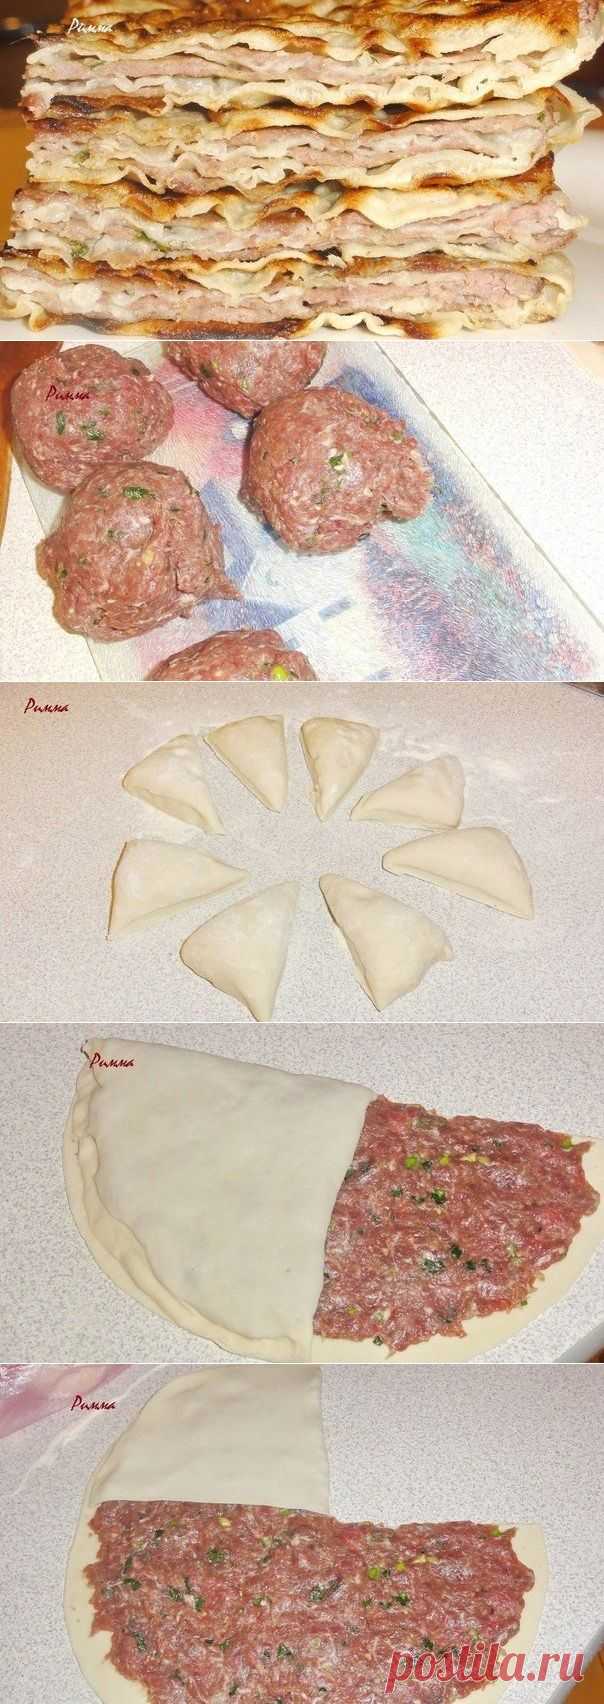 Как приготовить китайские лепешки с мясом - безумно вкусные и сочные - рецепт, ингридиенты и фотографии